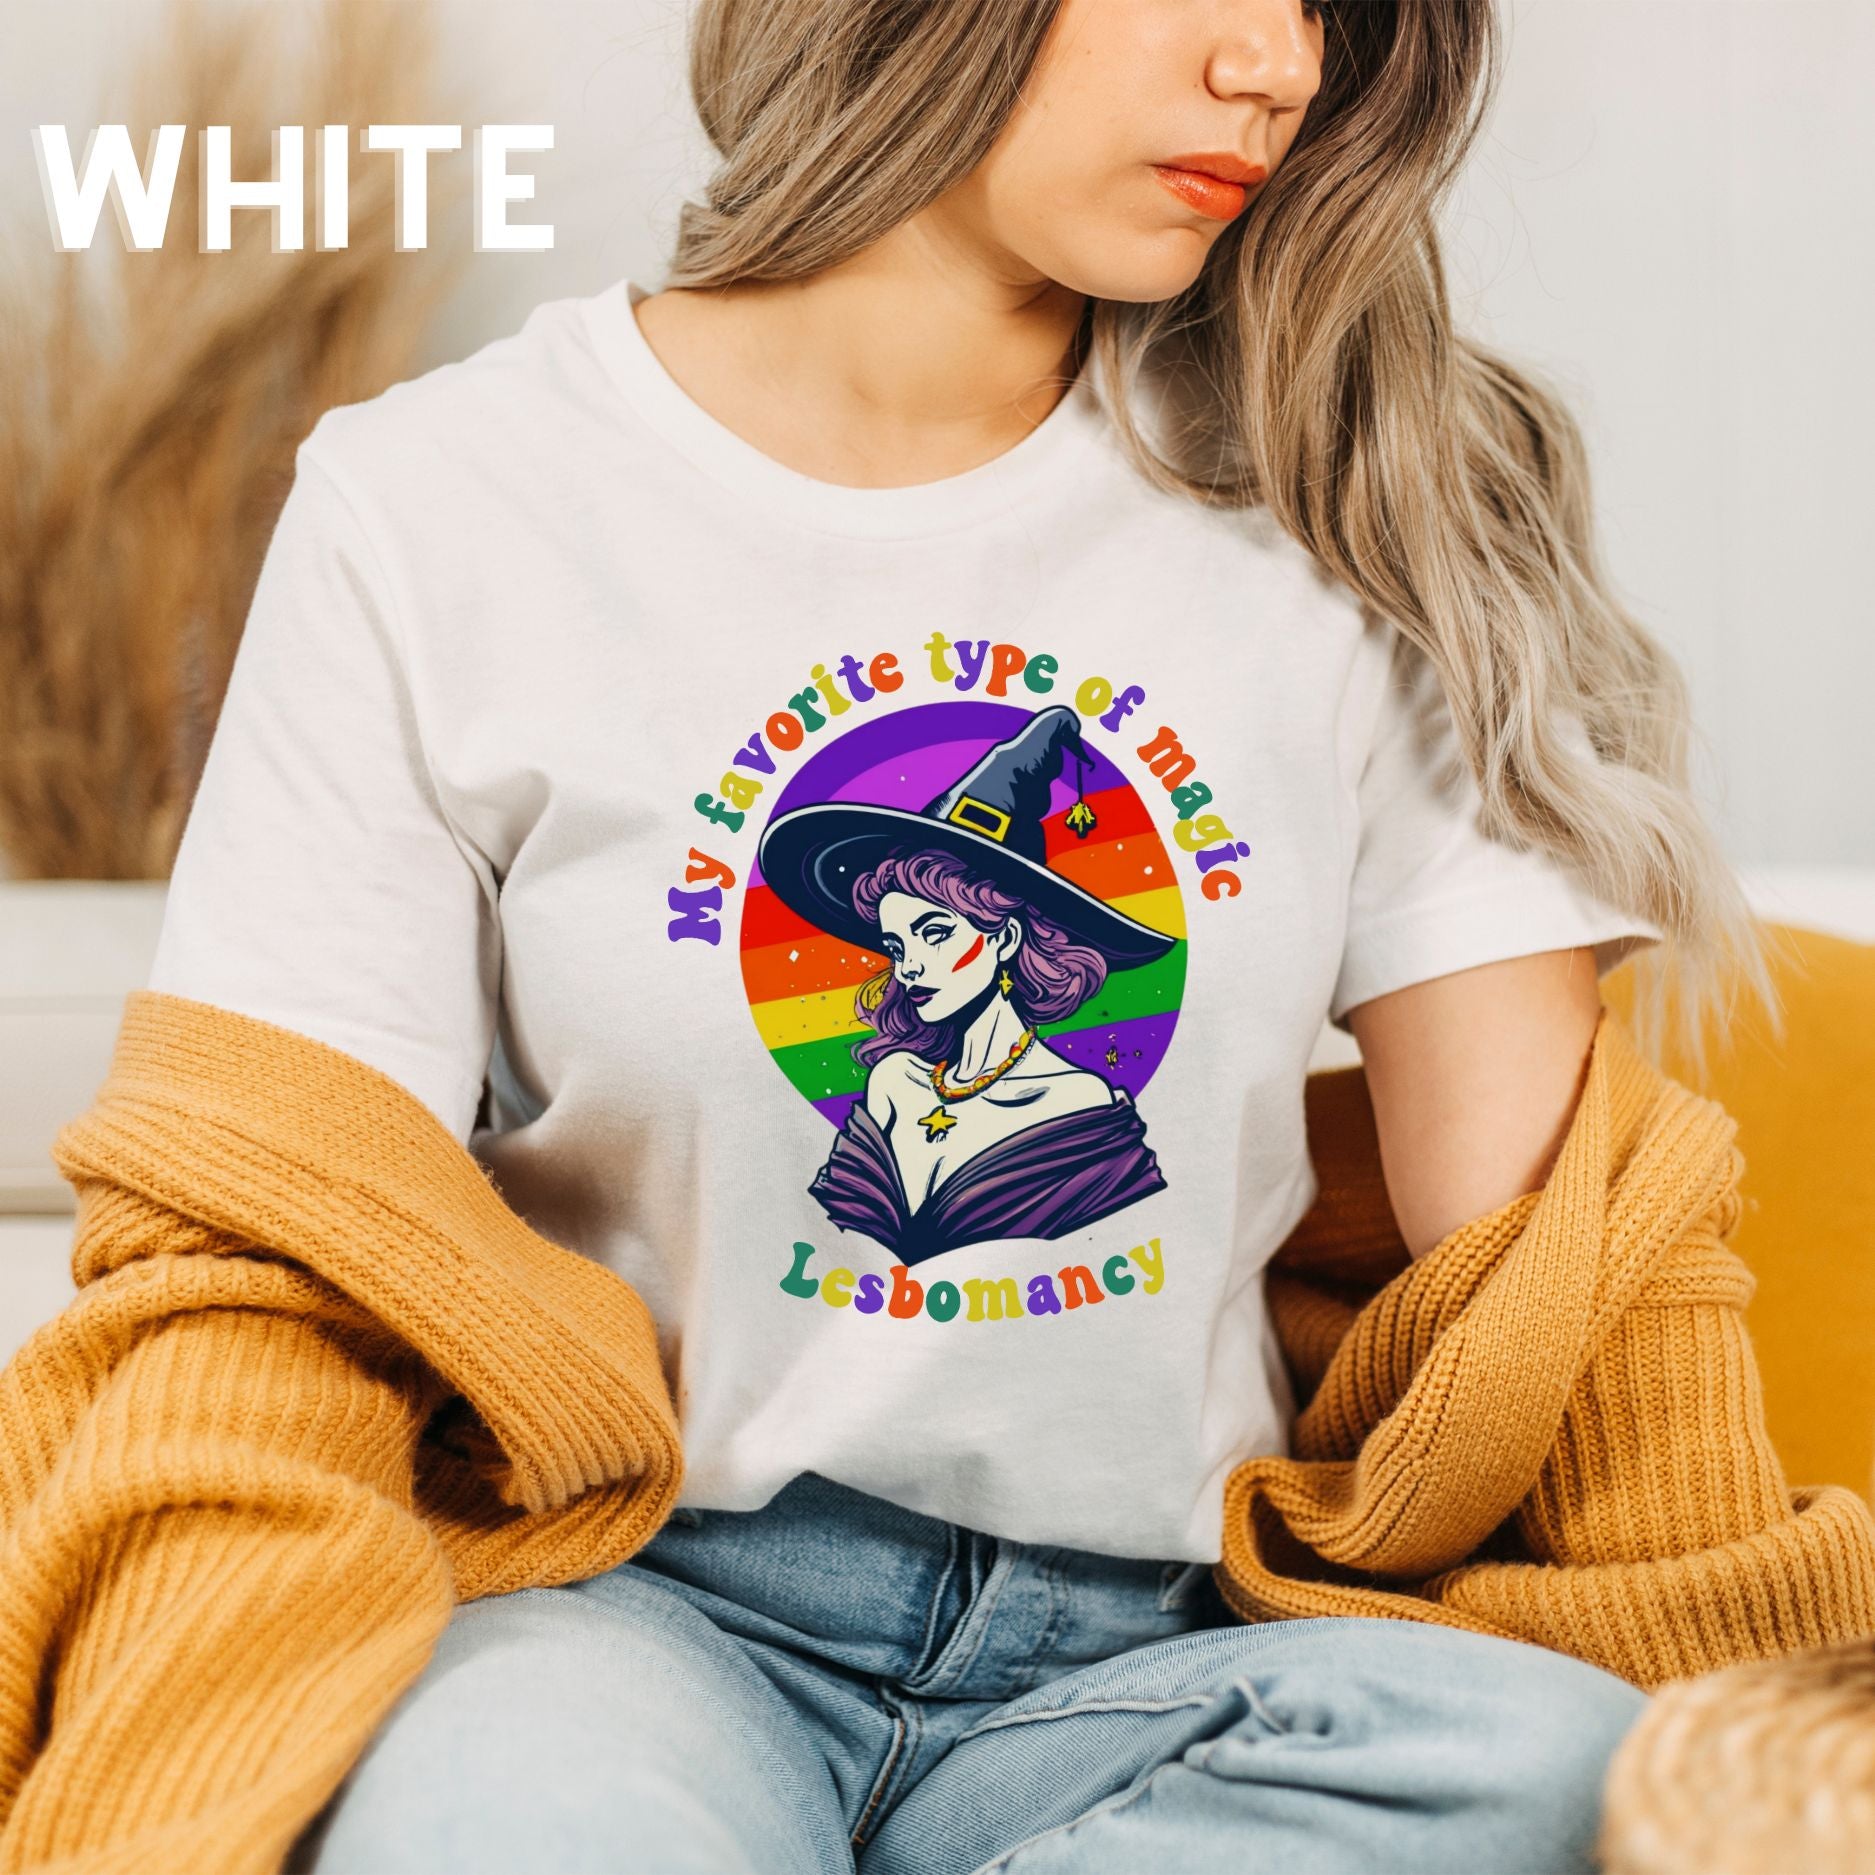 Halloween LGBT T-Shirt | Gay Witch Shirt - Spooky and Proud Tee - LGBT Halloween Shirt - Lesbian Halloween T-Shirt   